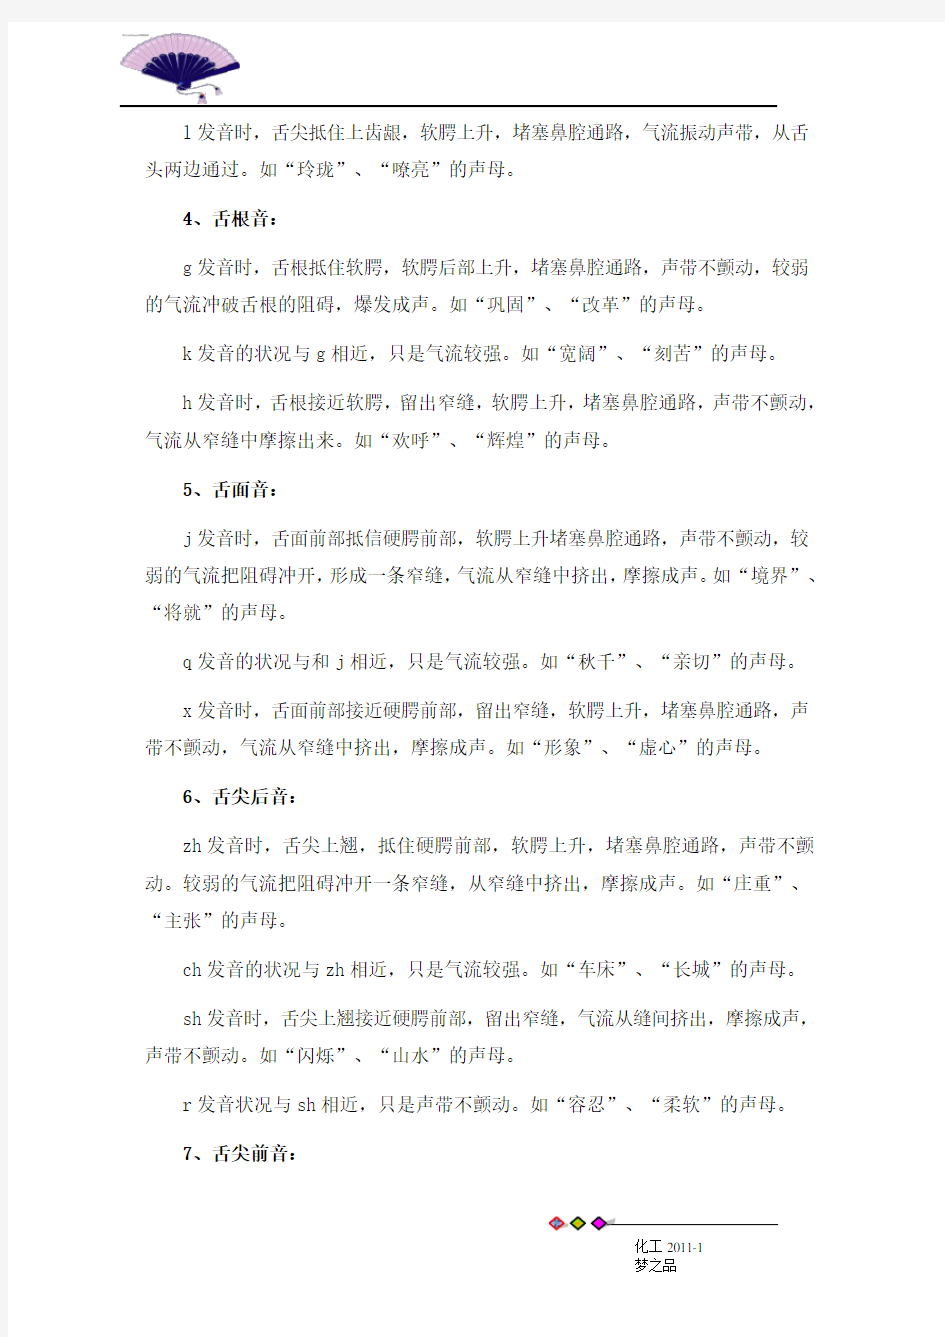 汉语拼音发音方法